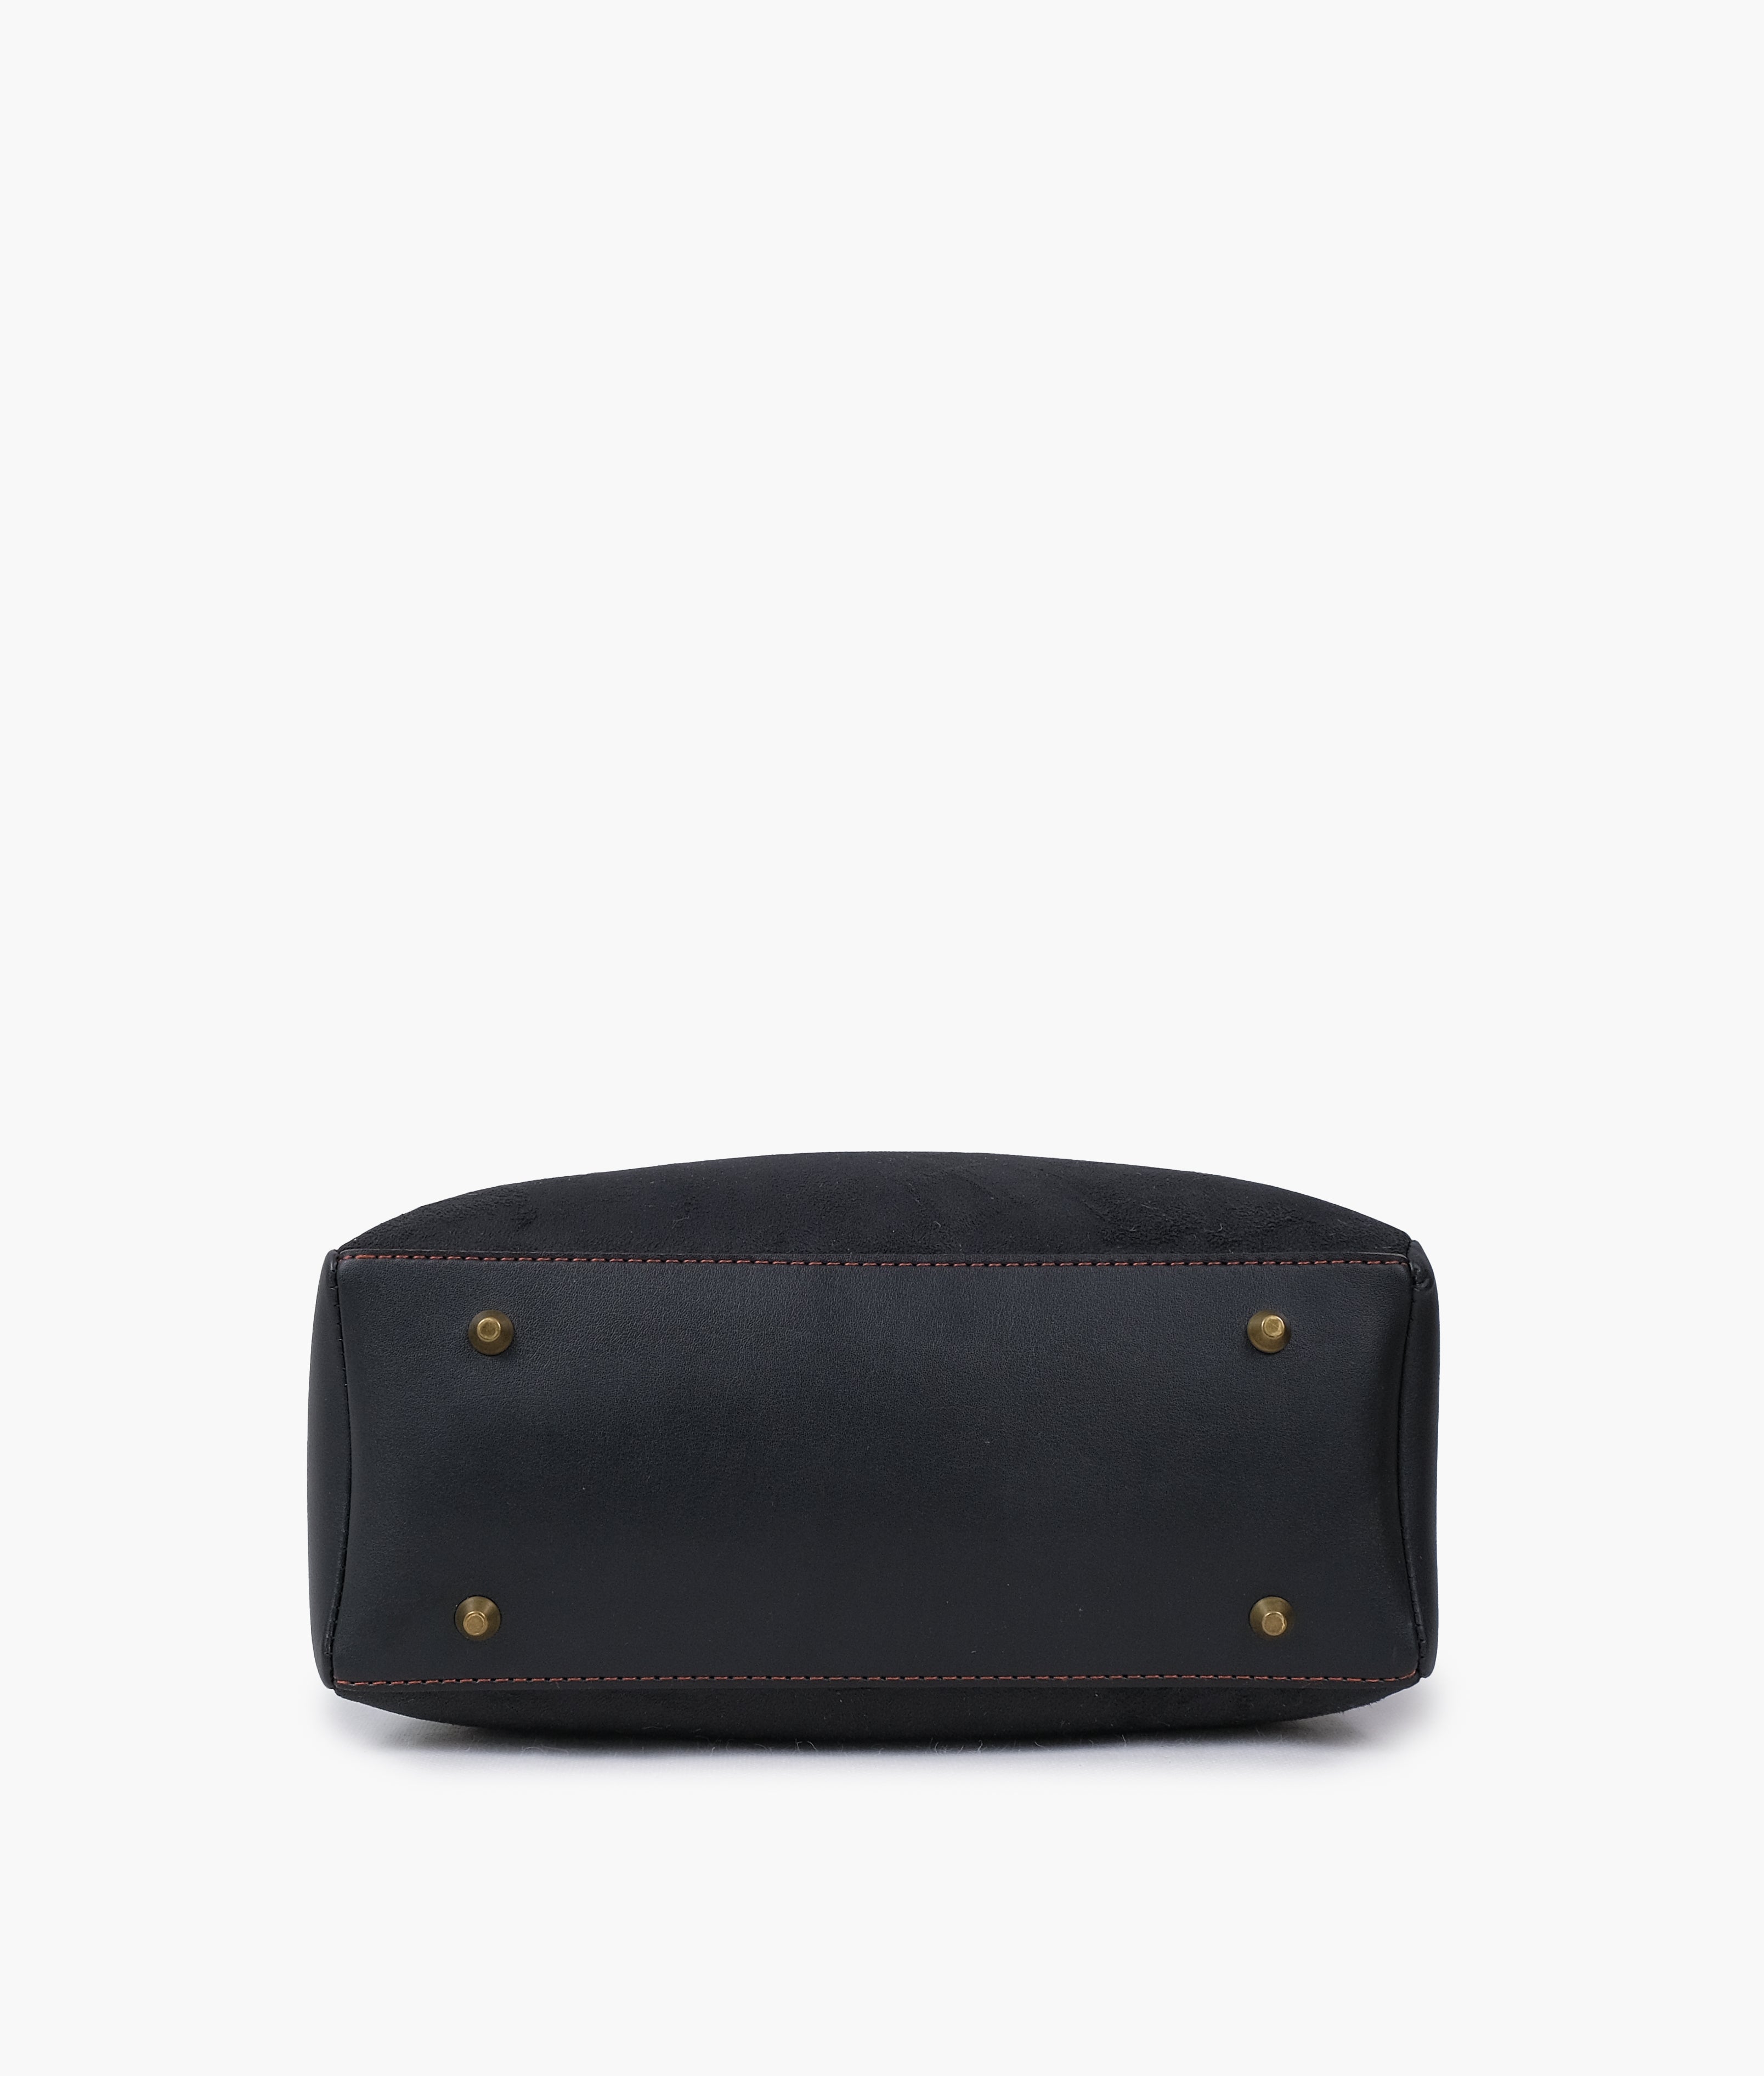 Black suede mini bag